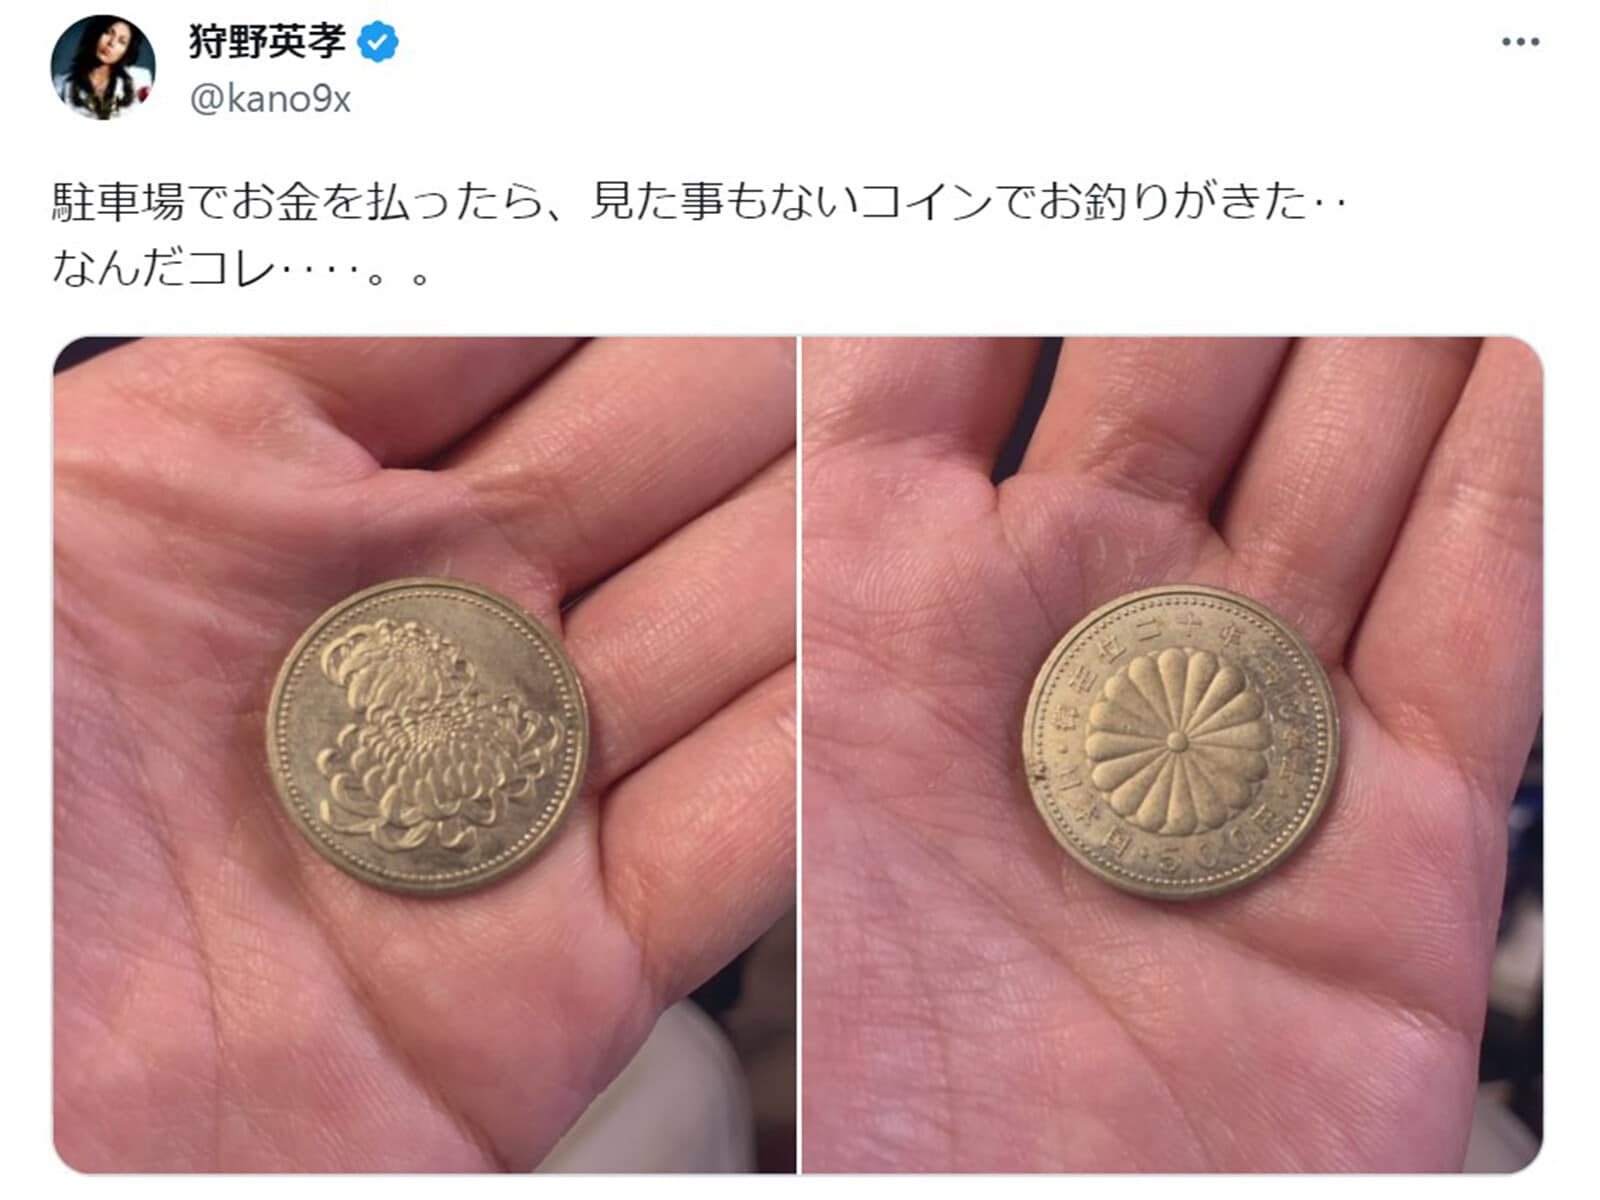 【皇太子殿下御成婚記念5000円プルーフ硬貨】他プルーフ硬貨多数有ります